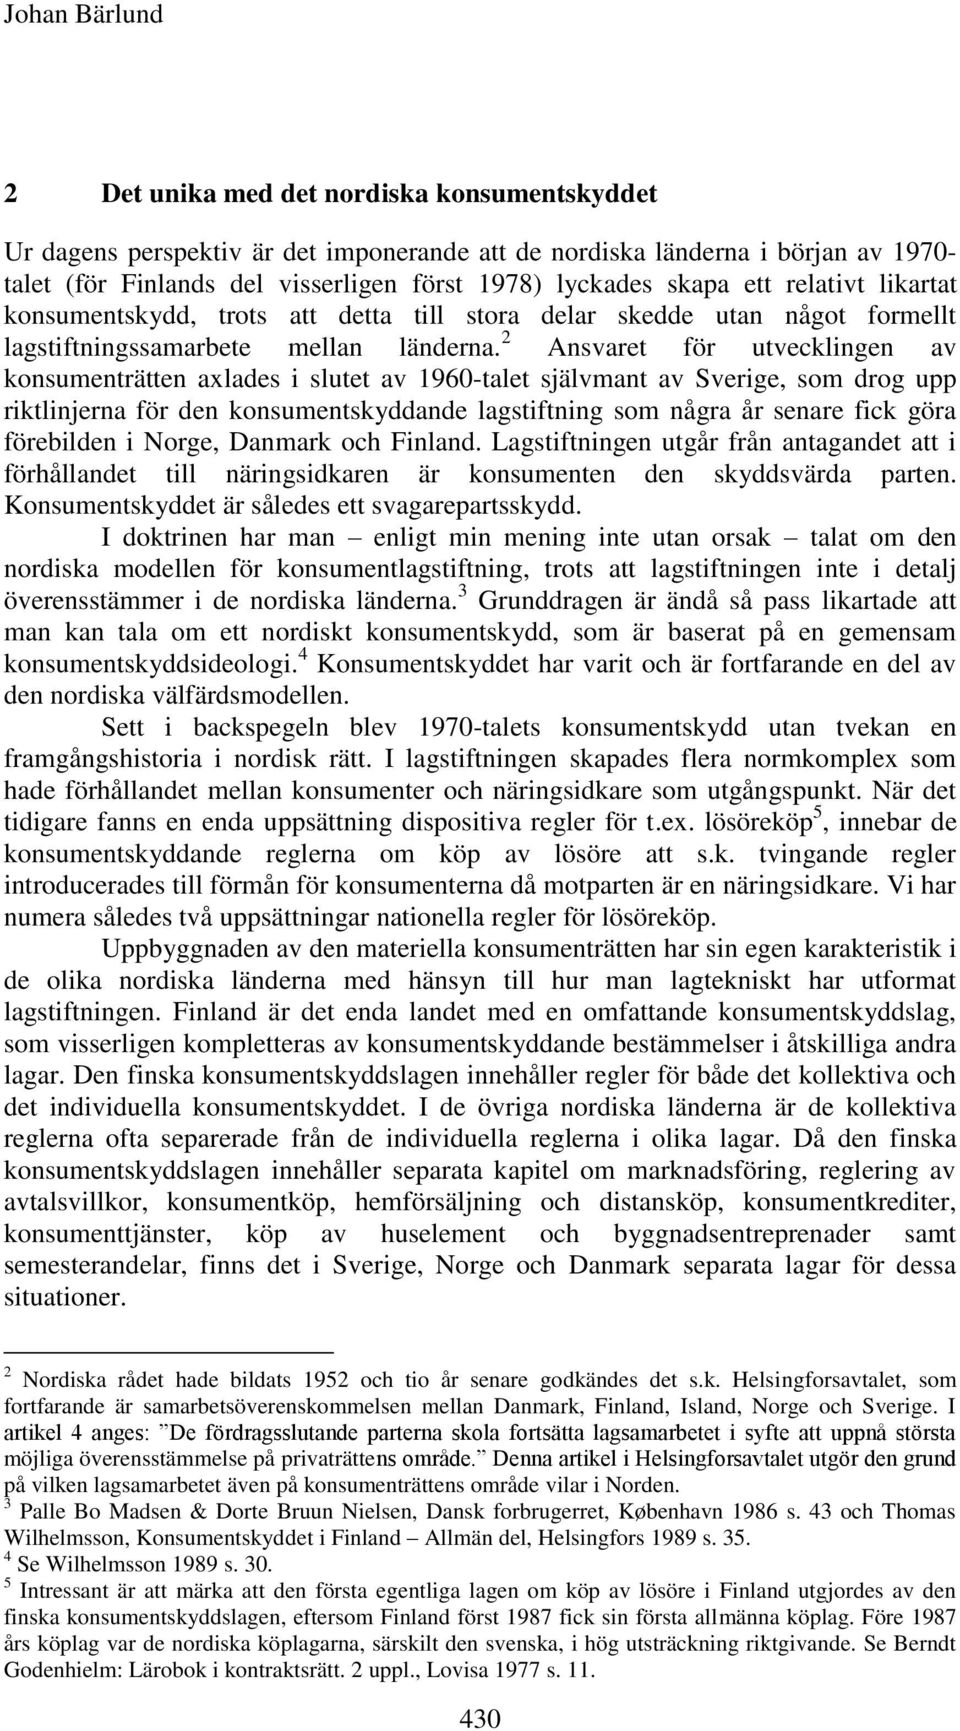 2 Ansvaret för utvecklingen av konsumenträtten axlades i slutet av 1960-talet självmant av Sverige, som drog upp riktlinjerna för den konsumentskyddande lagstiftning som några år senare fick göra